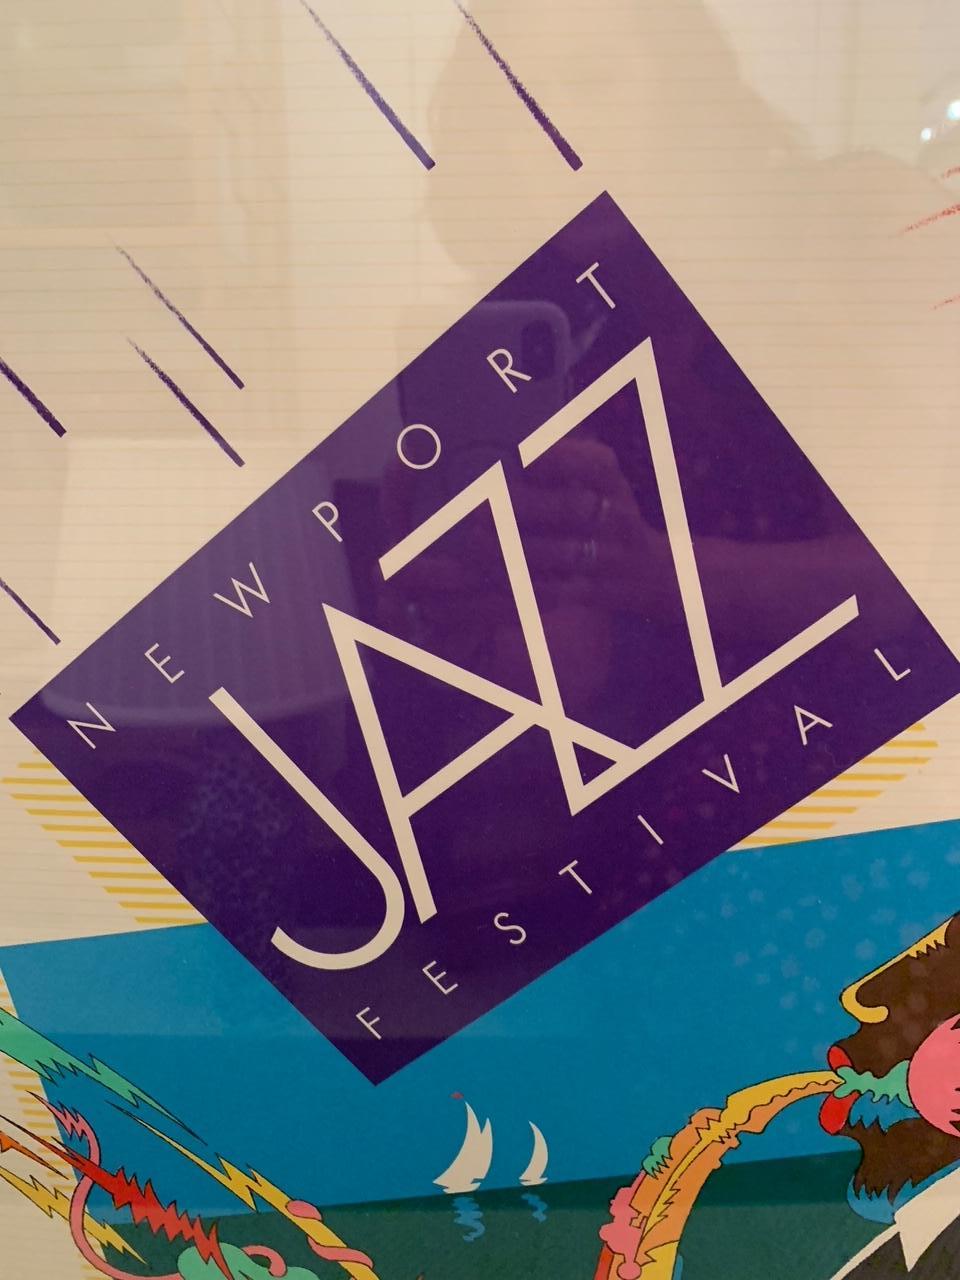 Ein farbenfrohes grafisches Plakat des Newport Jazz Festivals in limitierter Auflage mit geprägter Markierung und Nummer unten links.